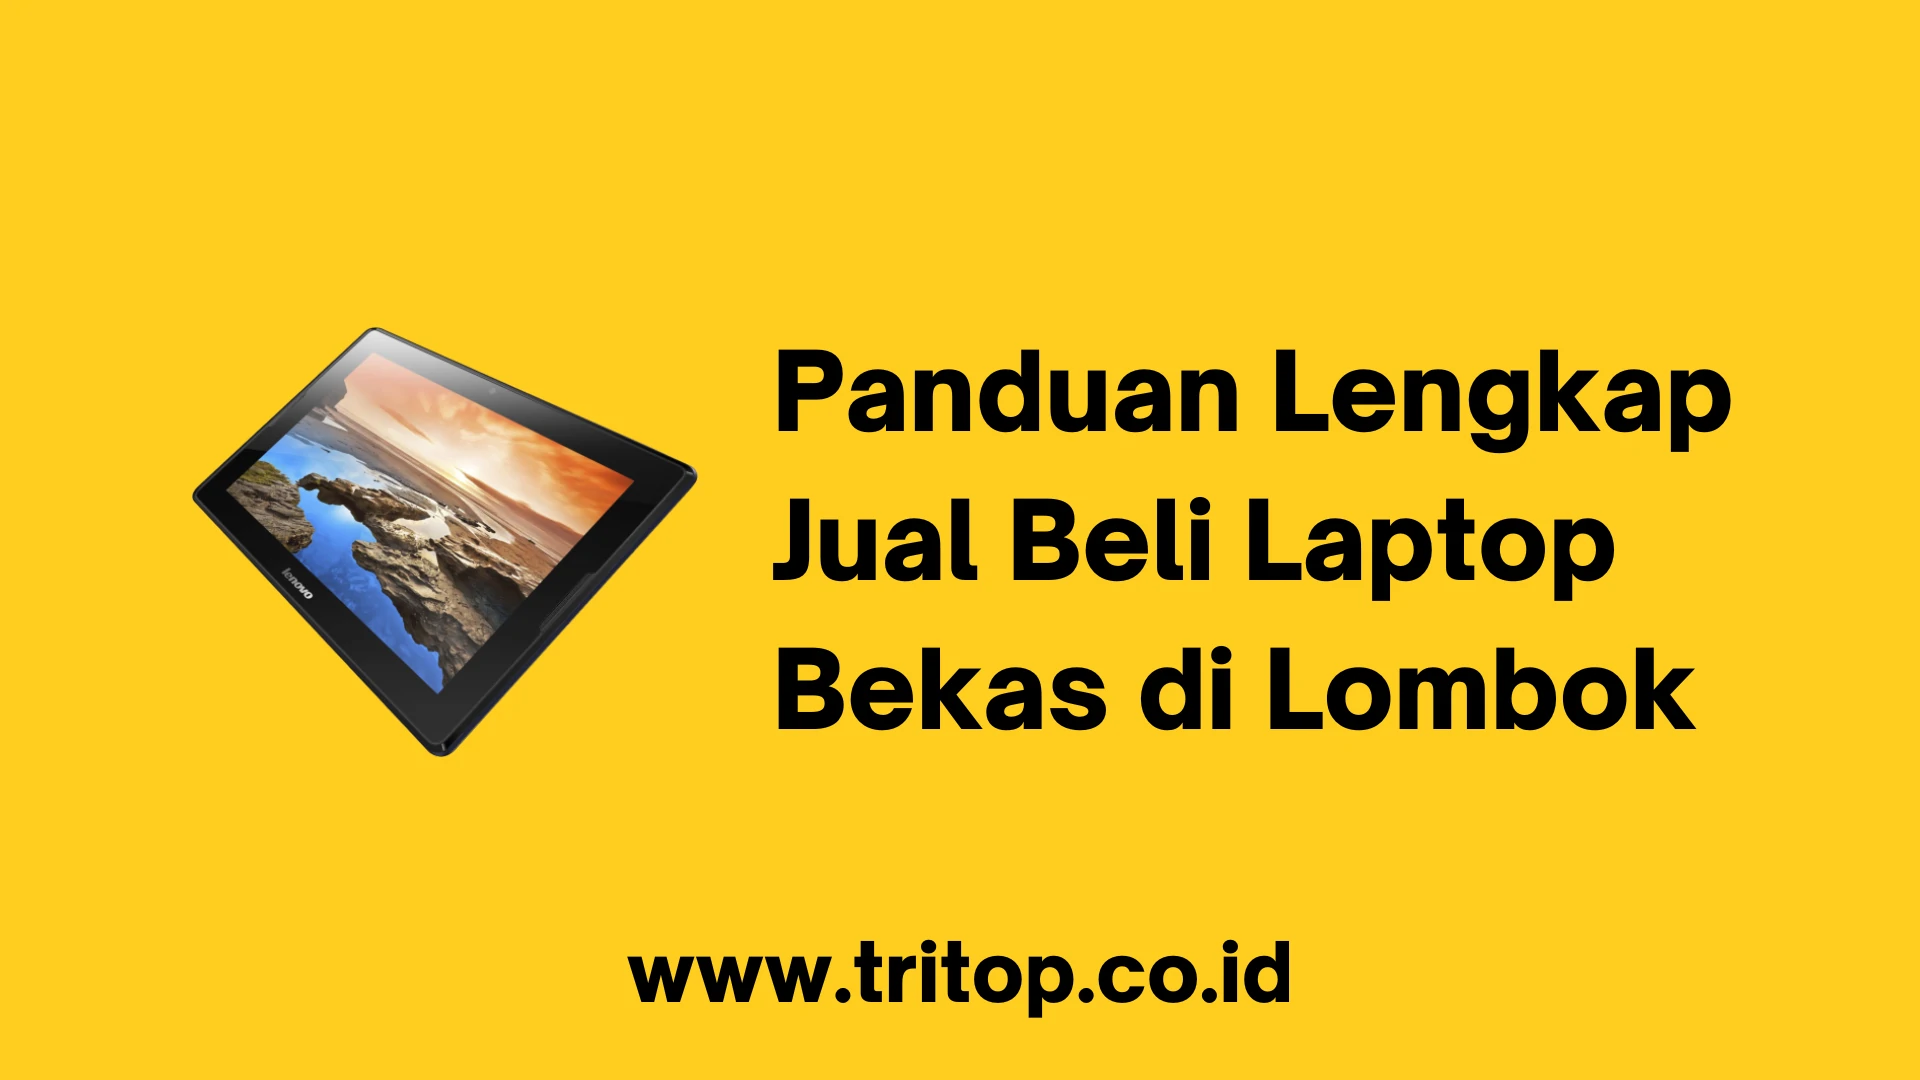 Jual Beli Laptop Bekas di Lombok